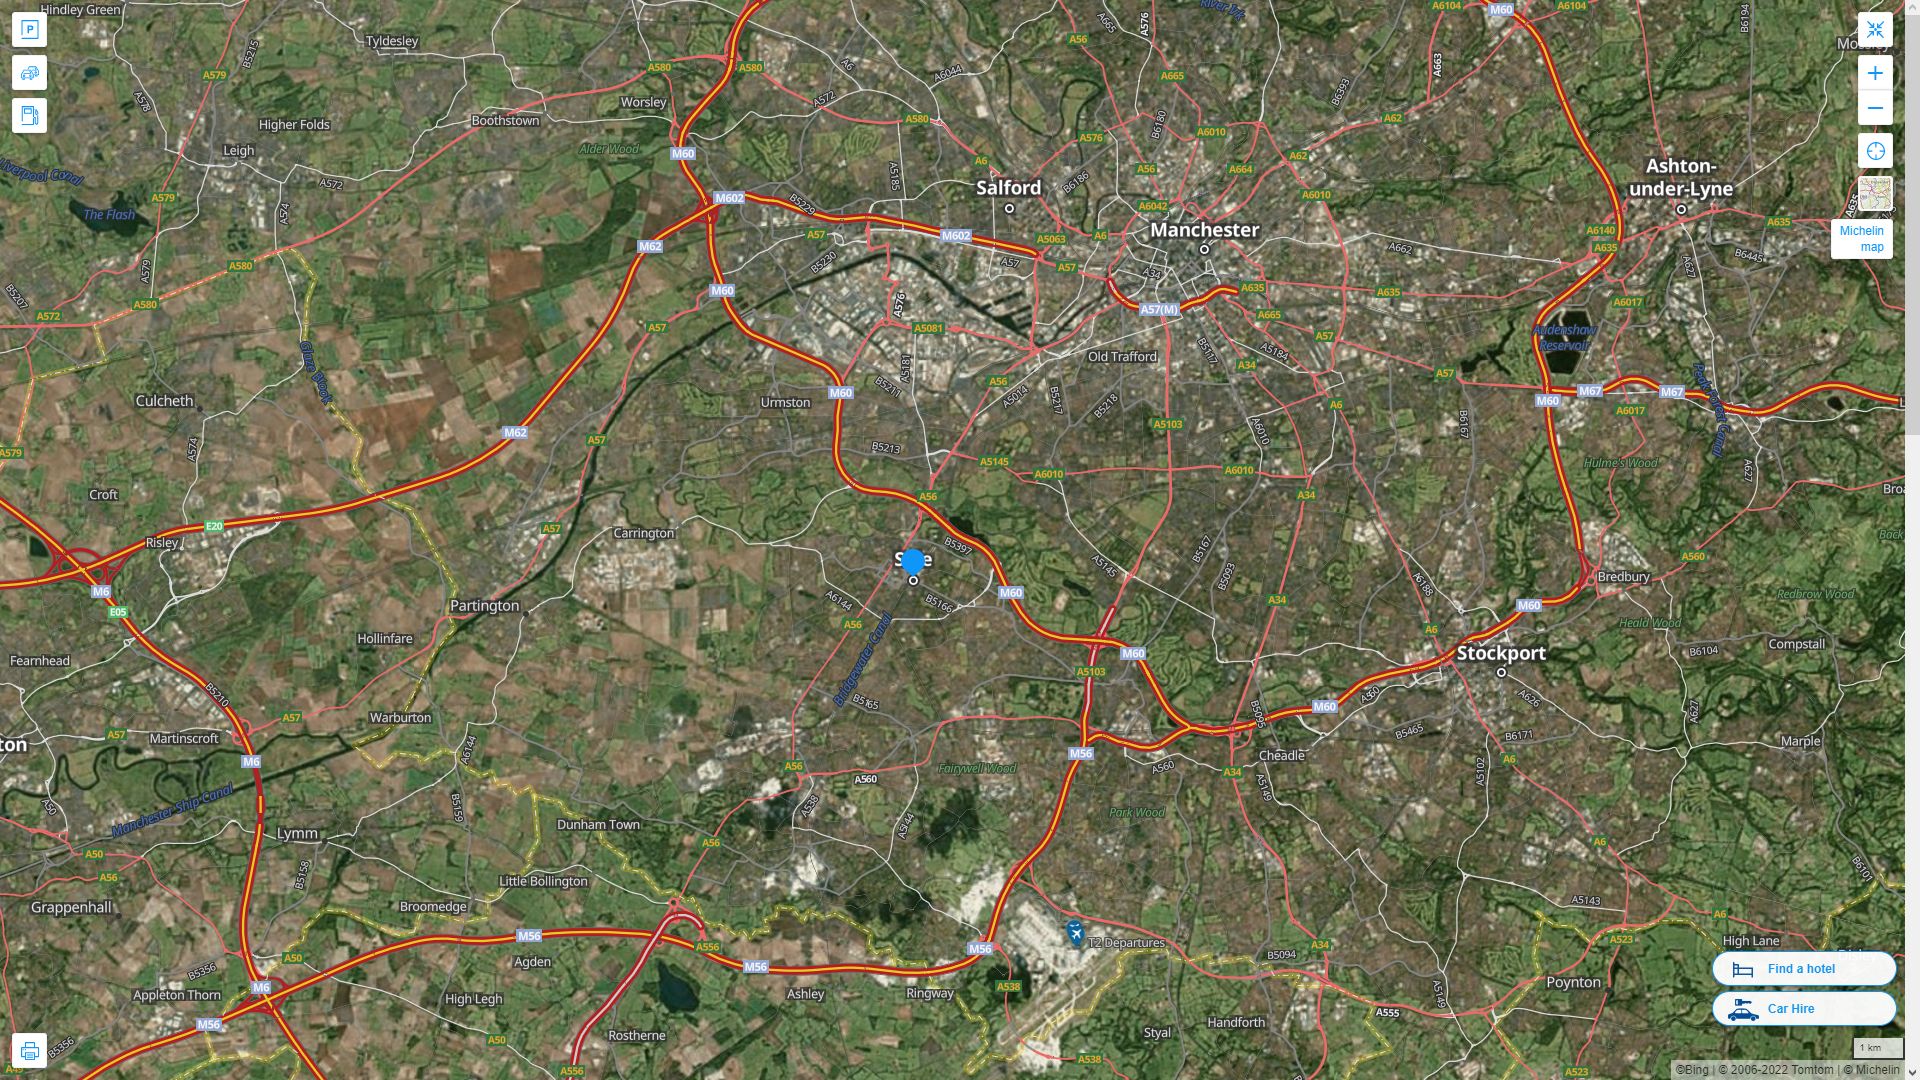 Sale Royaume Uni Autoroute et carte routiere avec vue satellite